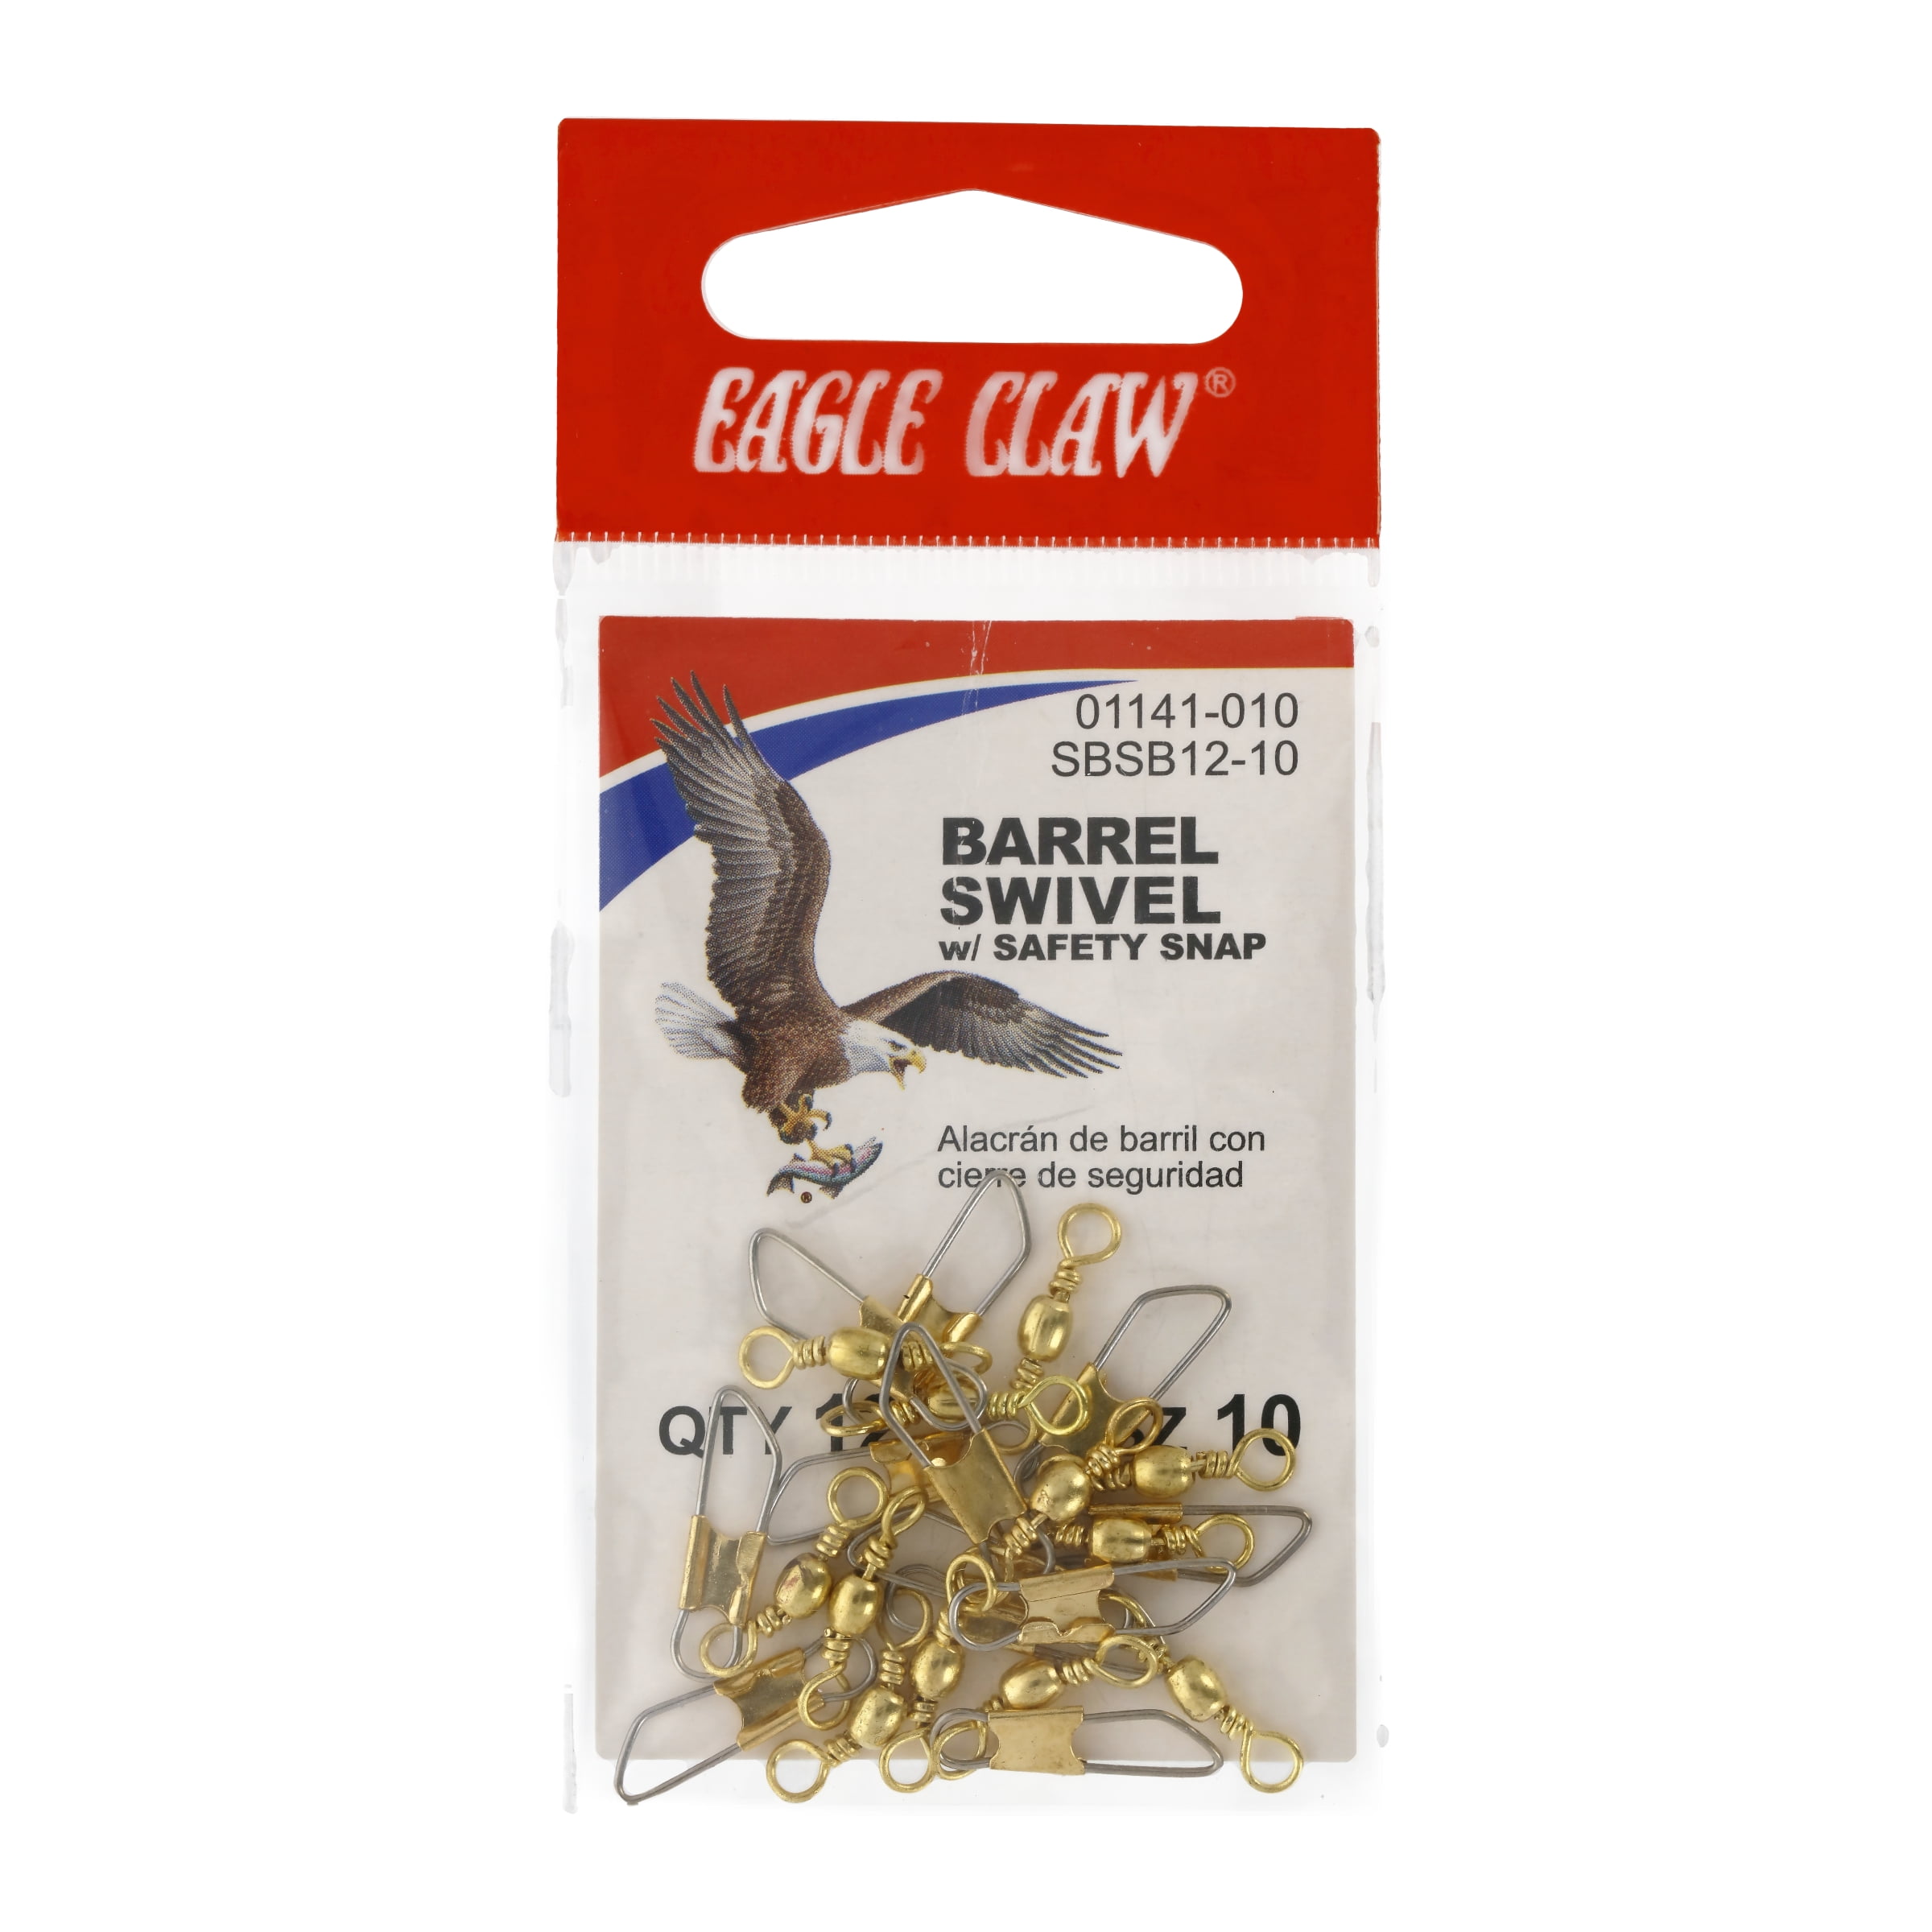 Eagle Claw 01032-003 Barrel Swivel